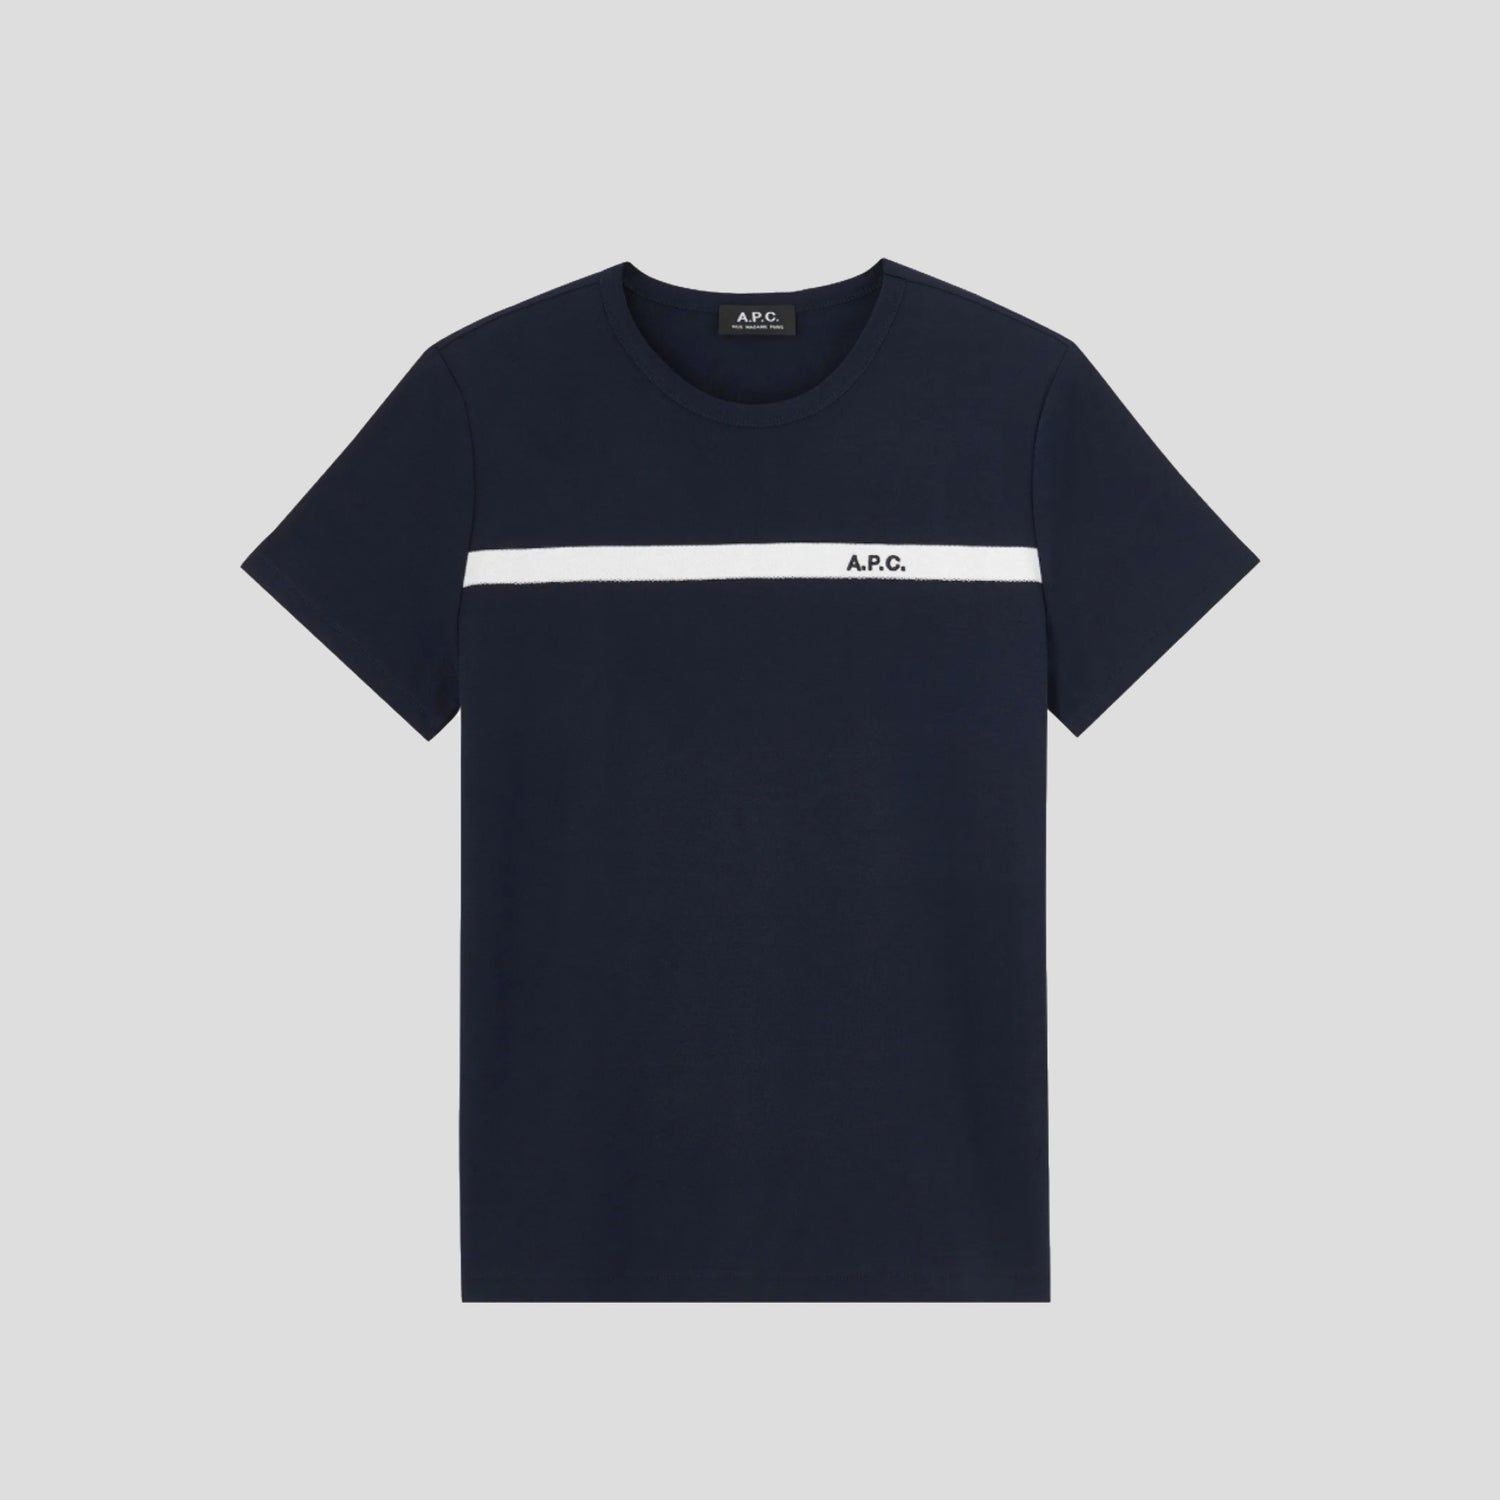 Tee shirt Yukata (navy)